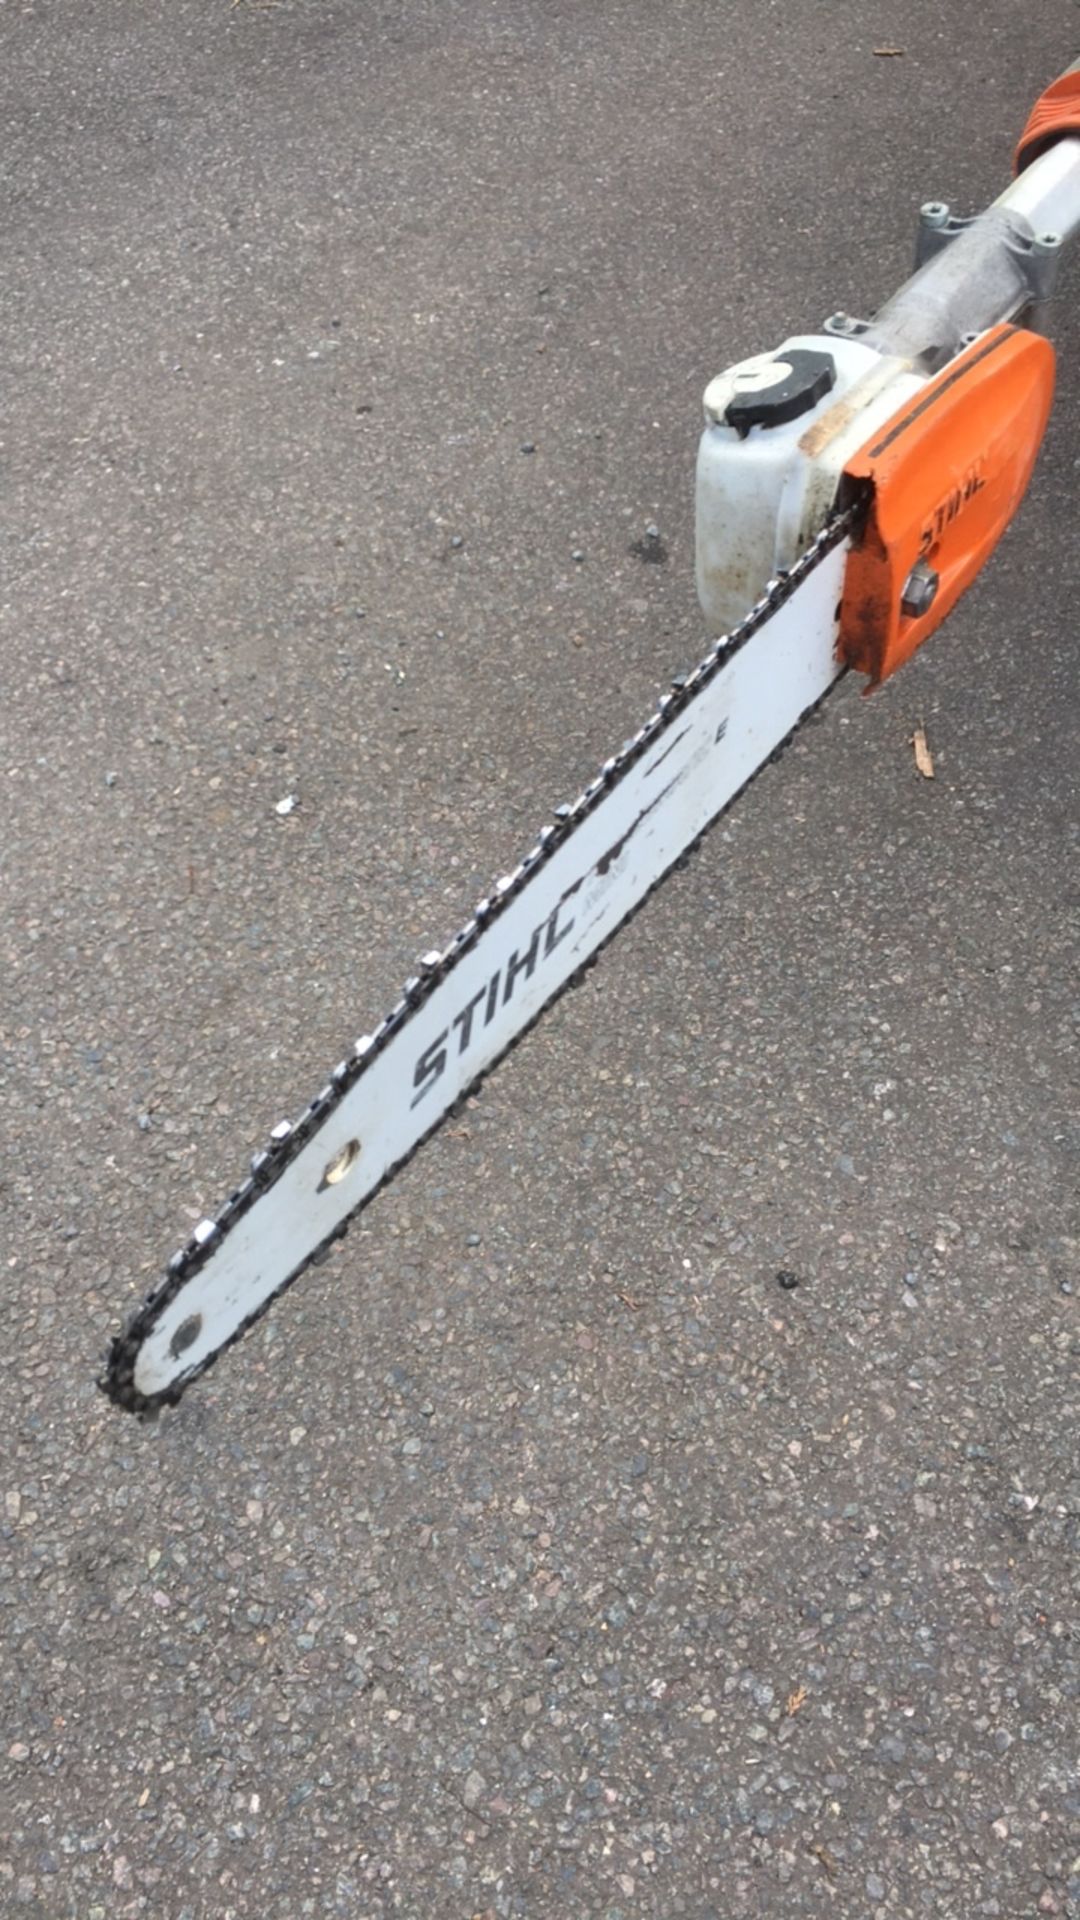 Stihl HT133 pole saw (A944914) - Image 2 of 7